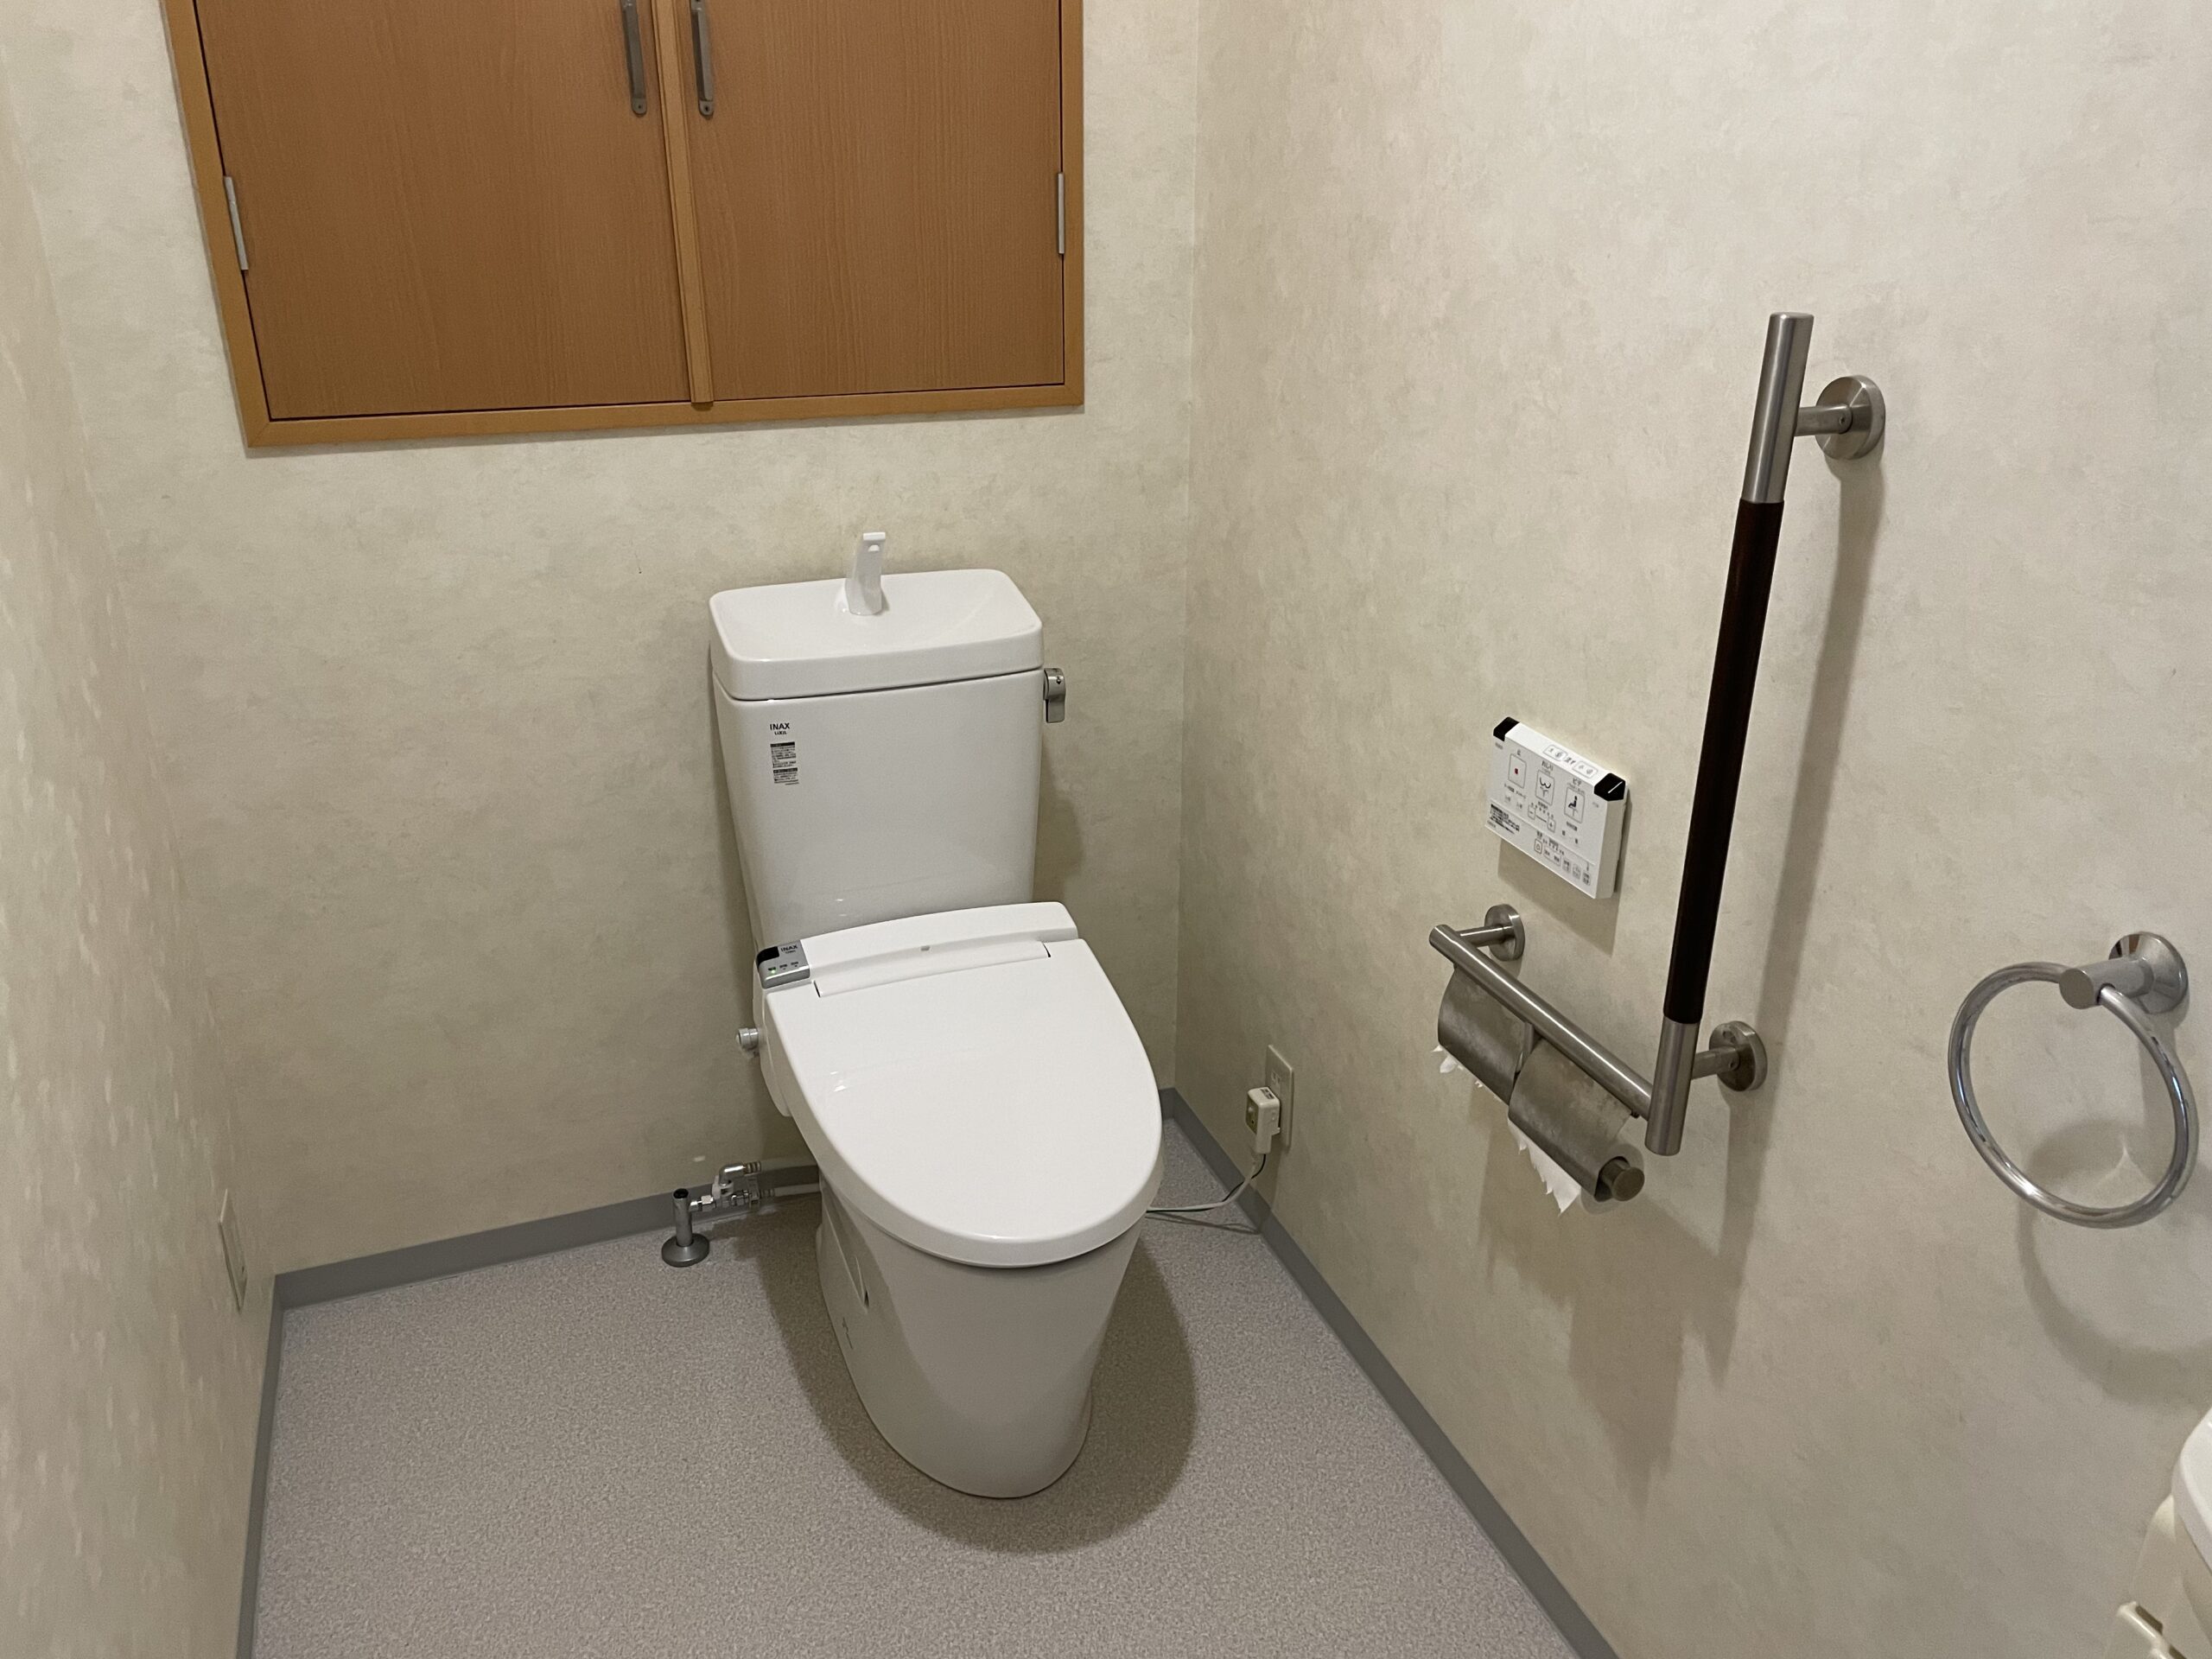 大阪市阿倍野区　戸建て住宅の洋式トイレ取替リフォーム工事　LIXILアメージュZの取替施工事例です